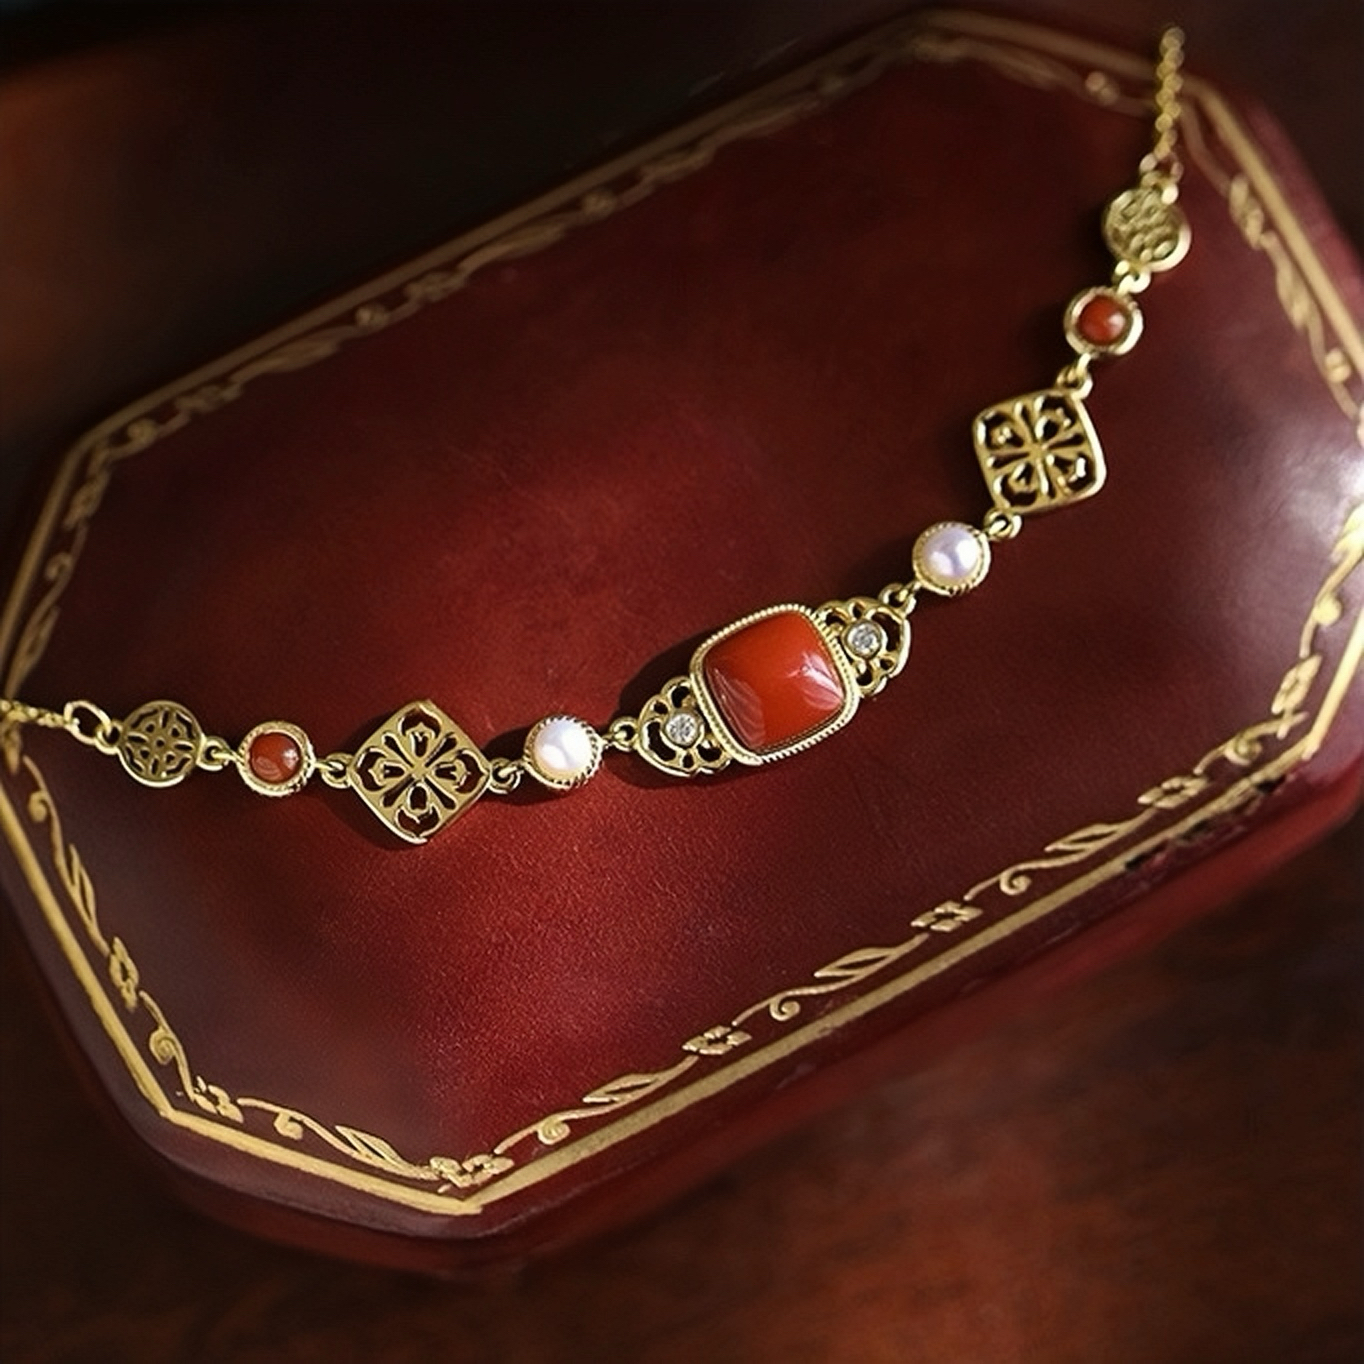 Collier Agate et Perle – Charme Antique, Argent Plaqué Or